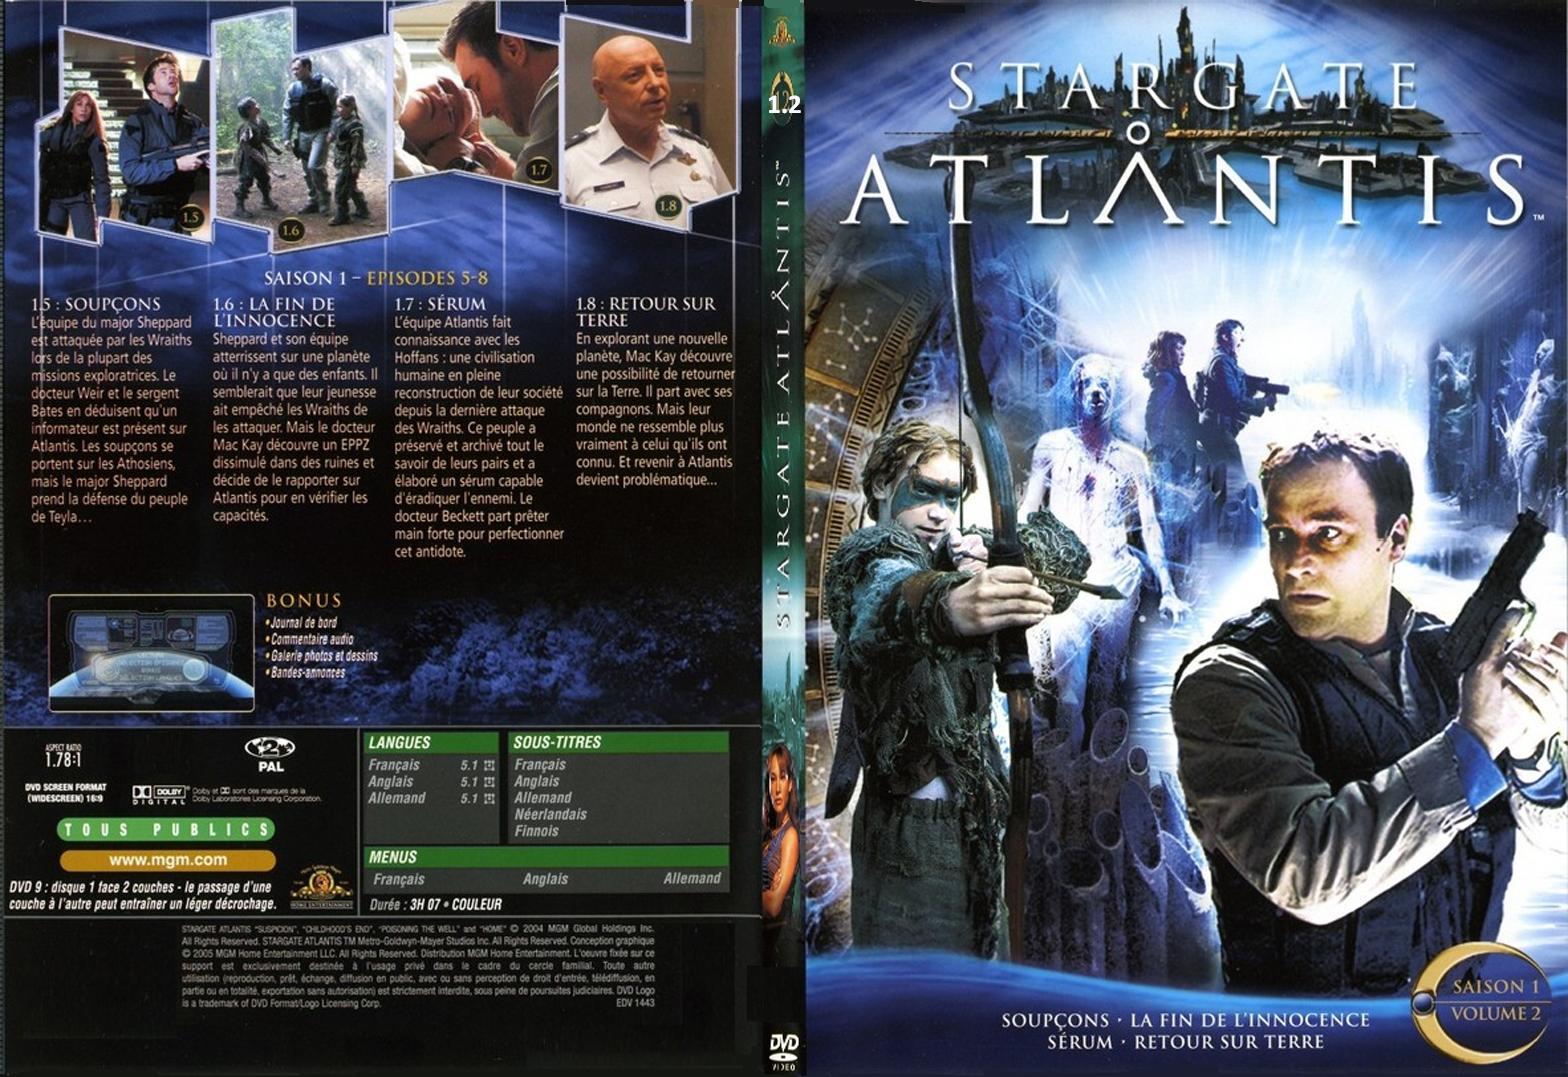 Jaquette DVD Stargate Atlantis saison 1 vol 2 - SLIM